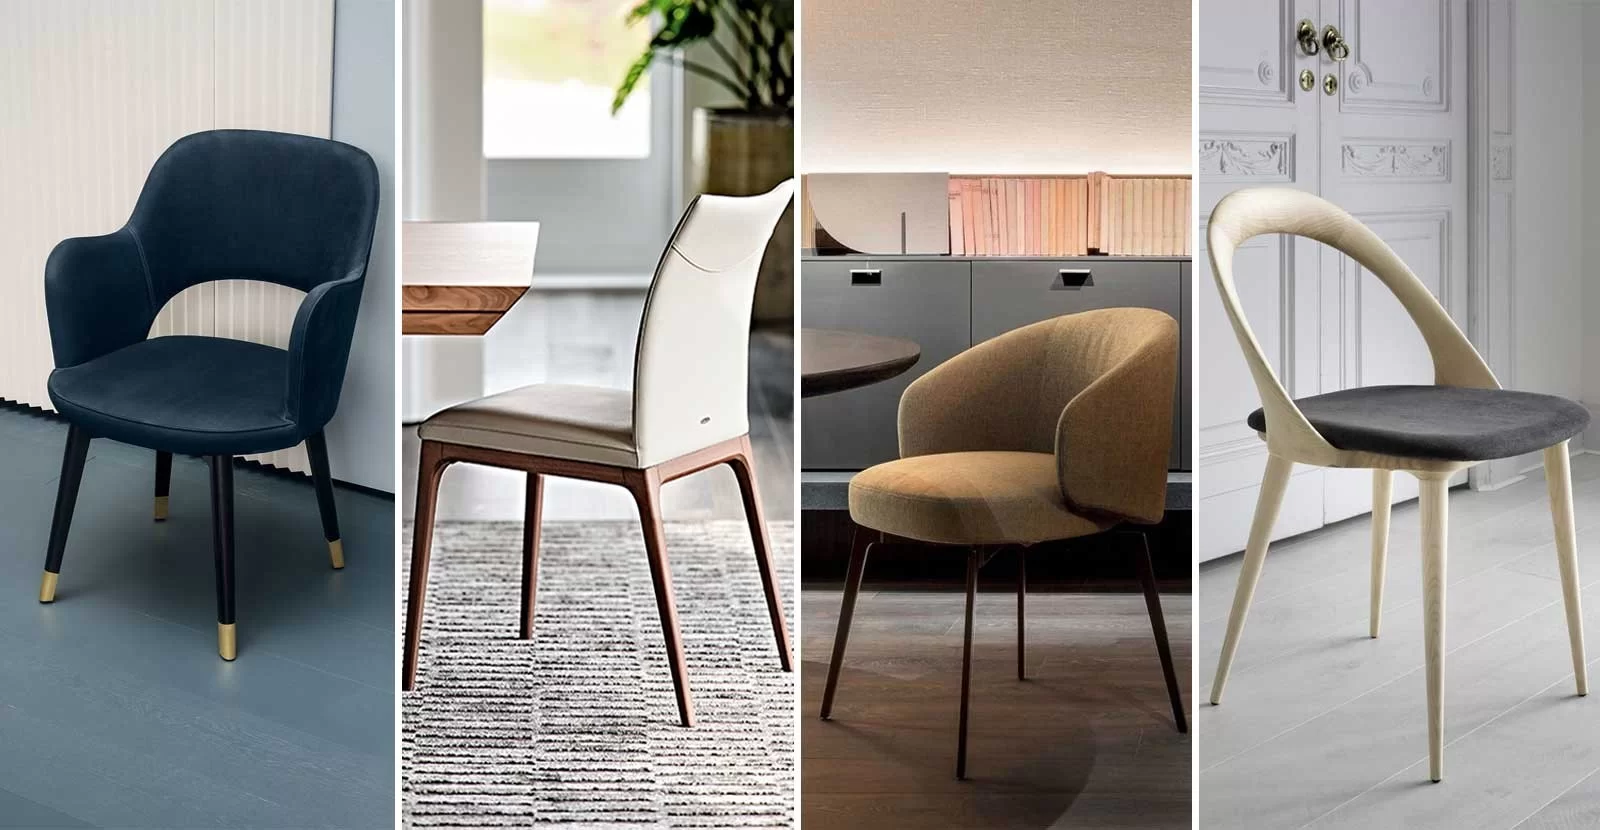 Find Designer & Luxury Chairs & Stools Online